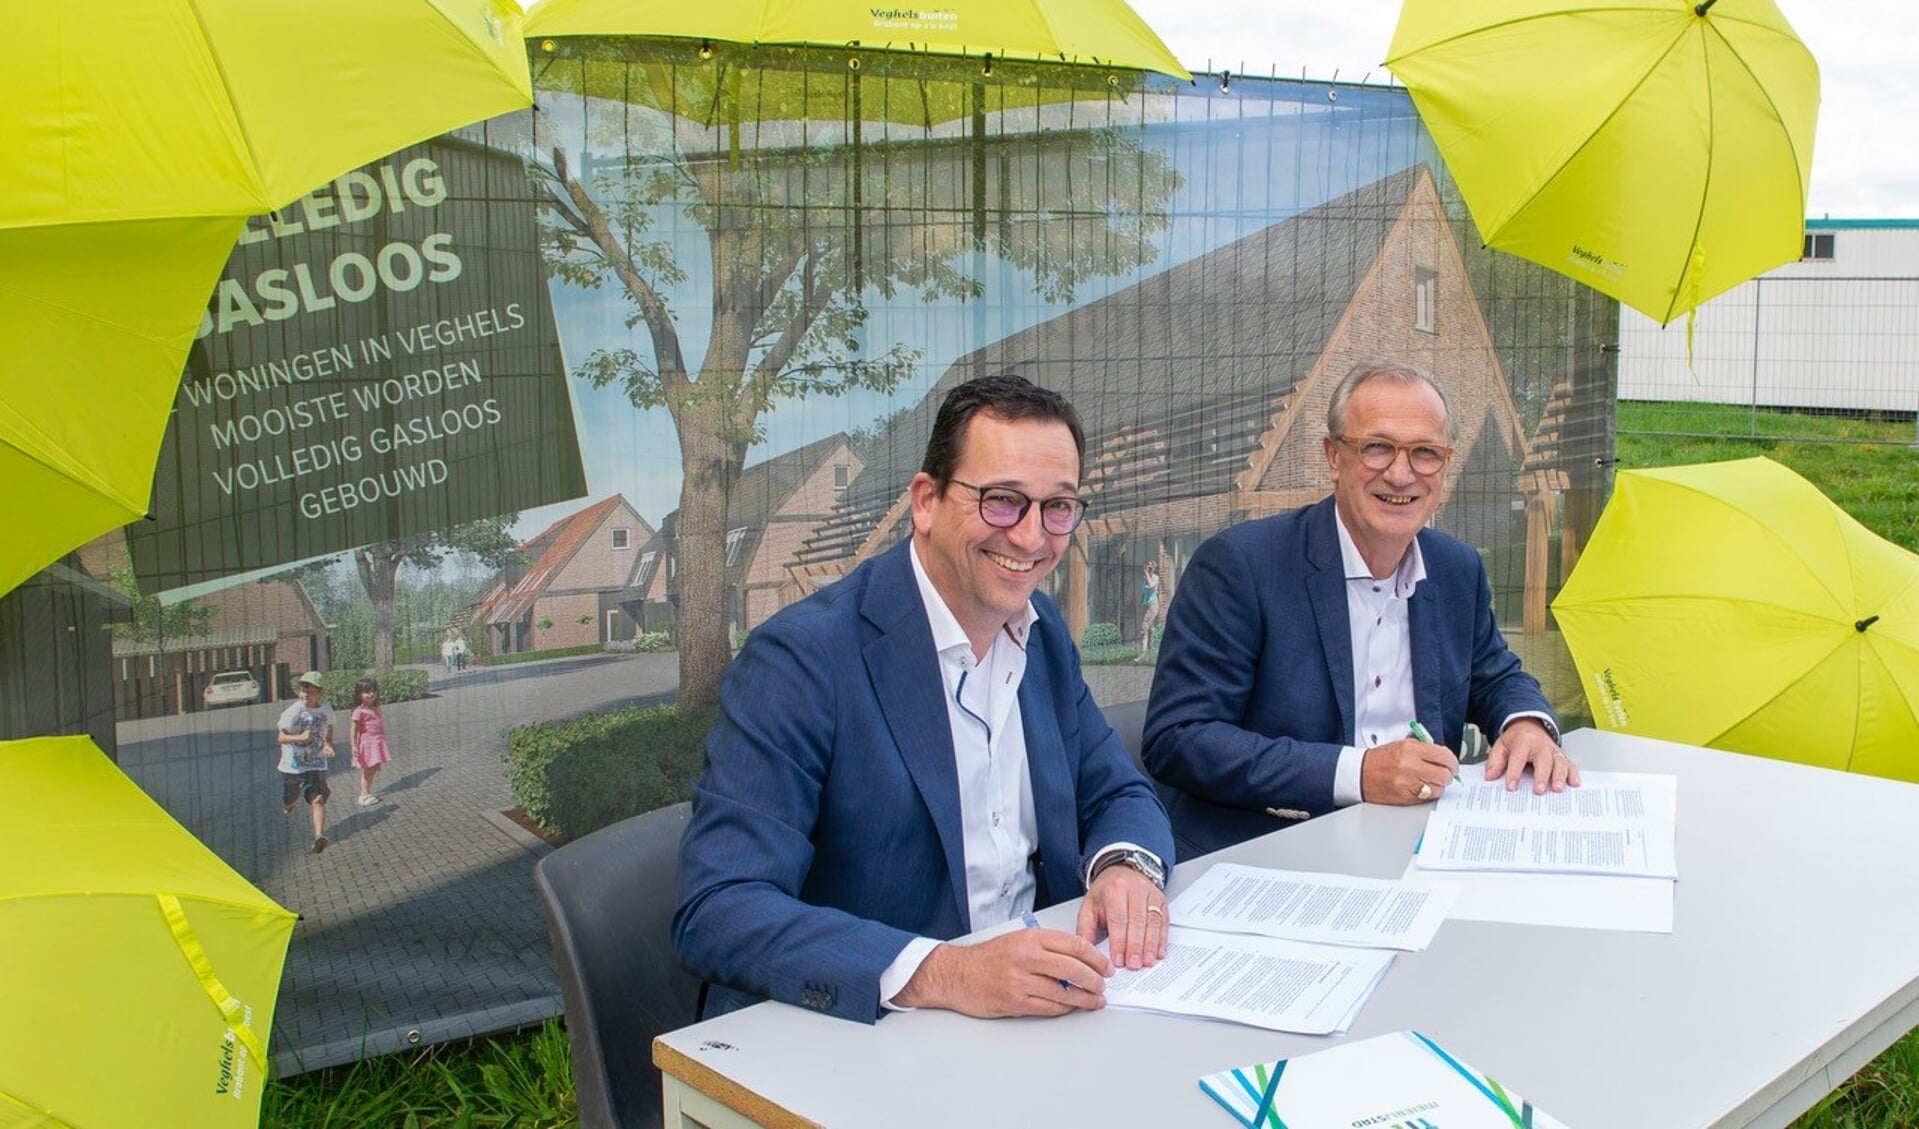 Directeur Jeroen van Stiphout van bouwbedrijf Van Stiphout en wethouder Jan Goijaarts ondertekenen de overeenkomst. 